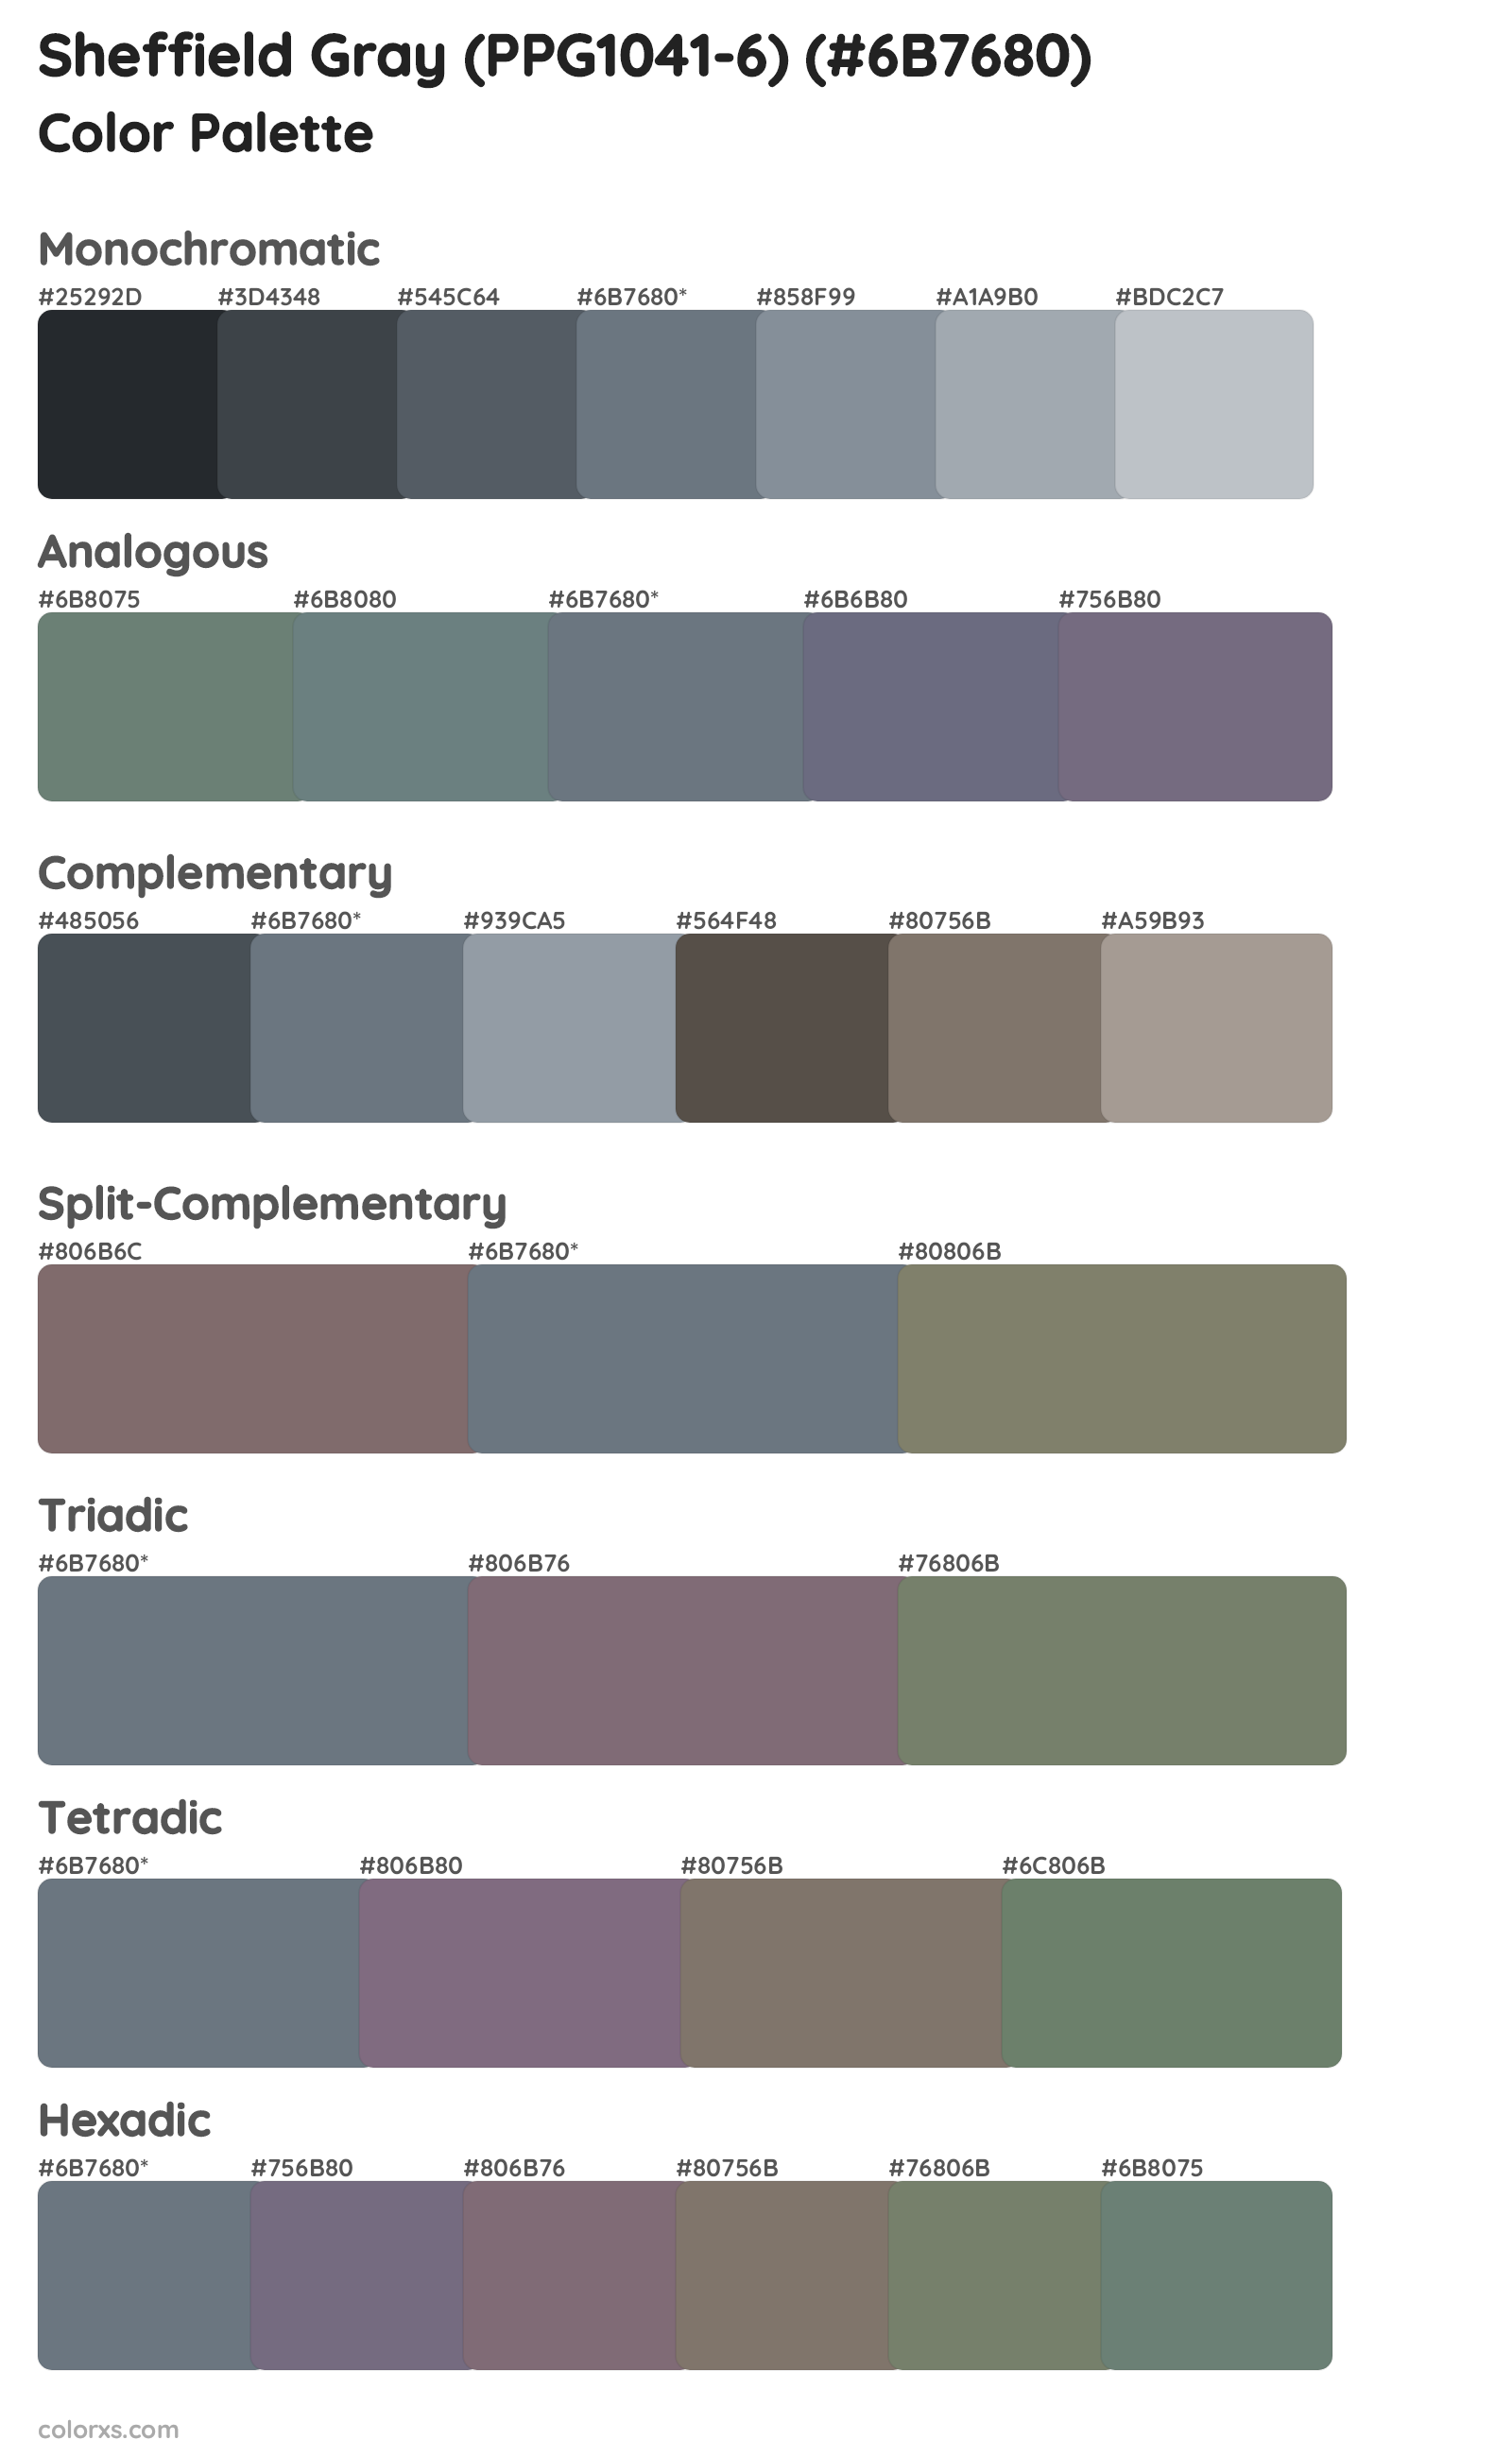 Sheffield Gray (PPG1041-6) Color Scheme Palettes